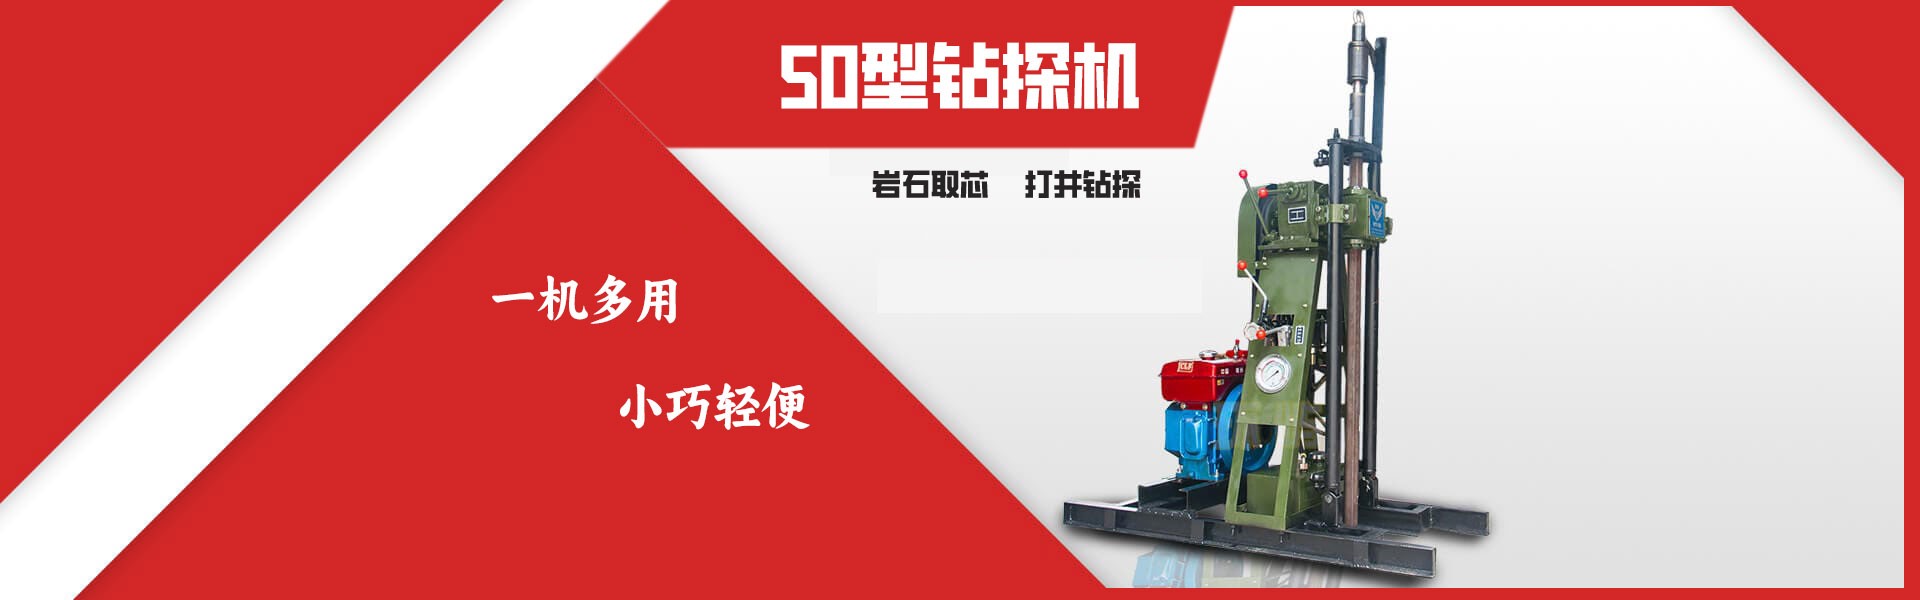 广州50型钻机